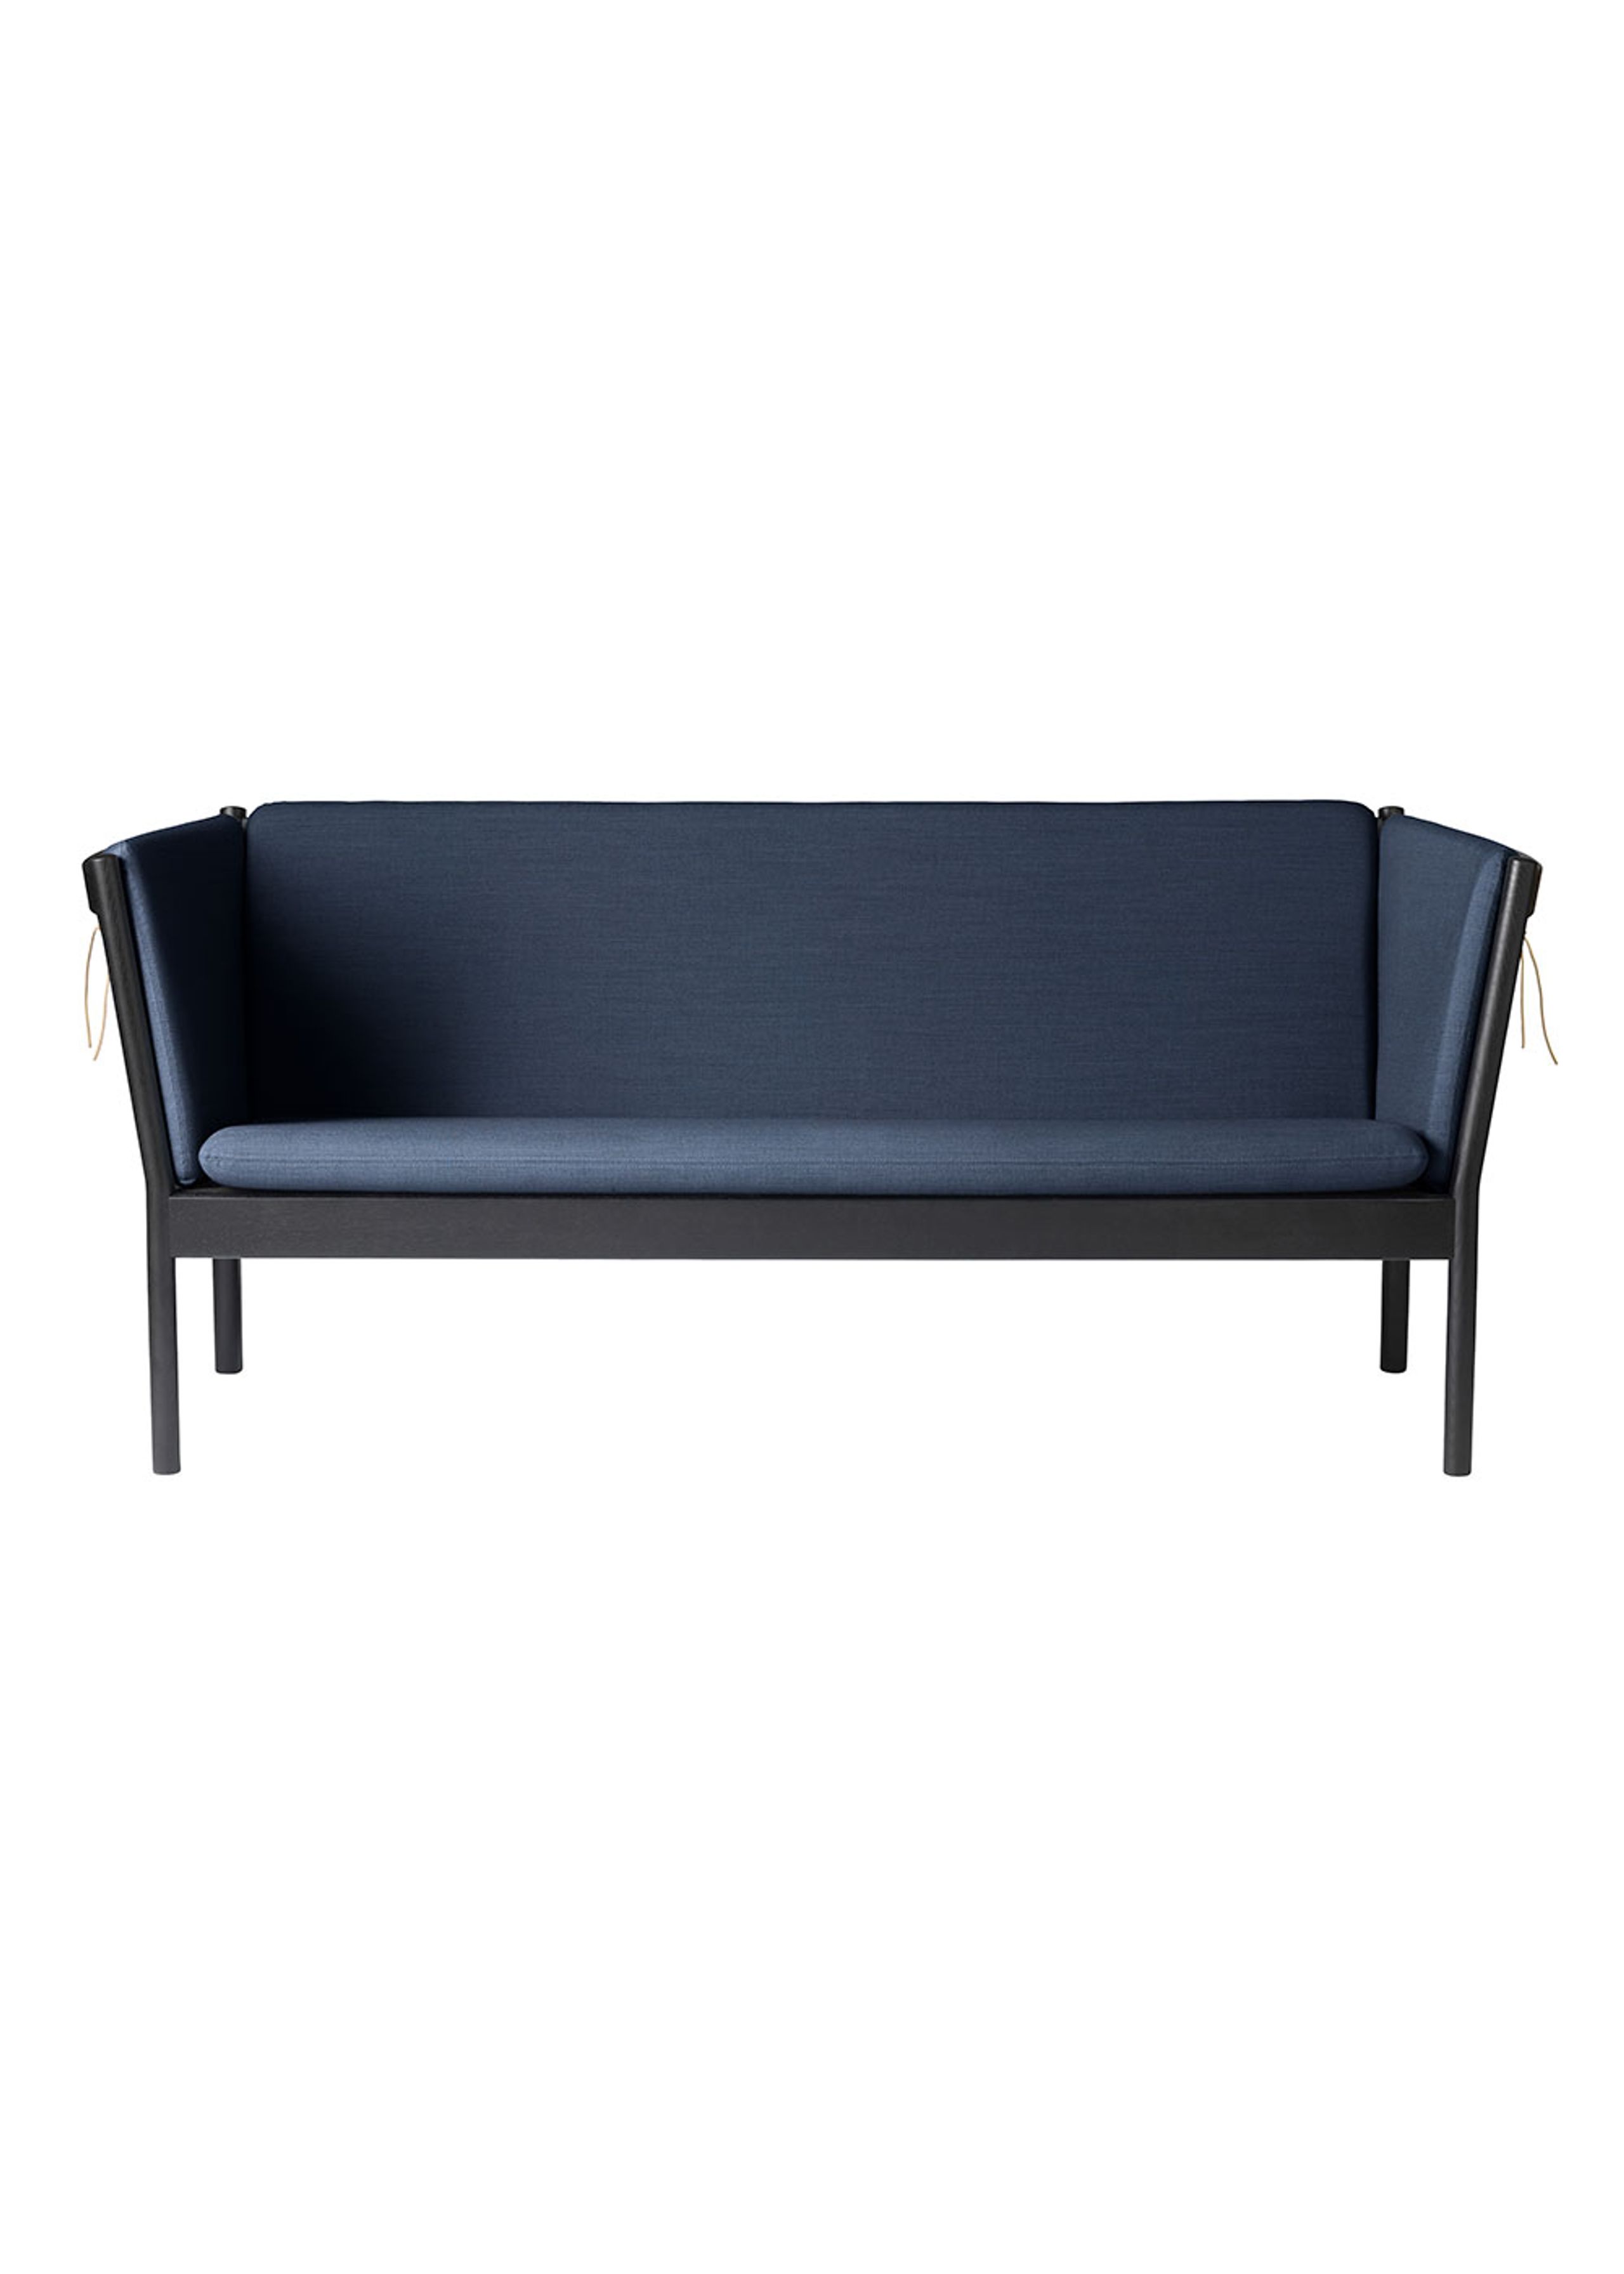 FDB Møbler / Furniture - Sofa - J149 3 pers by Erik Ole Jørgensen - Eg, Sort, Malet / Uld, Mørkeblå